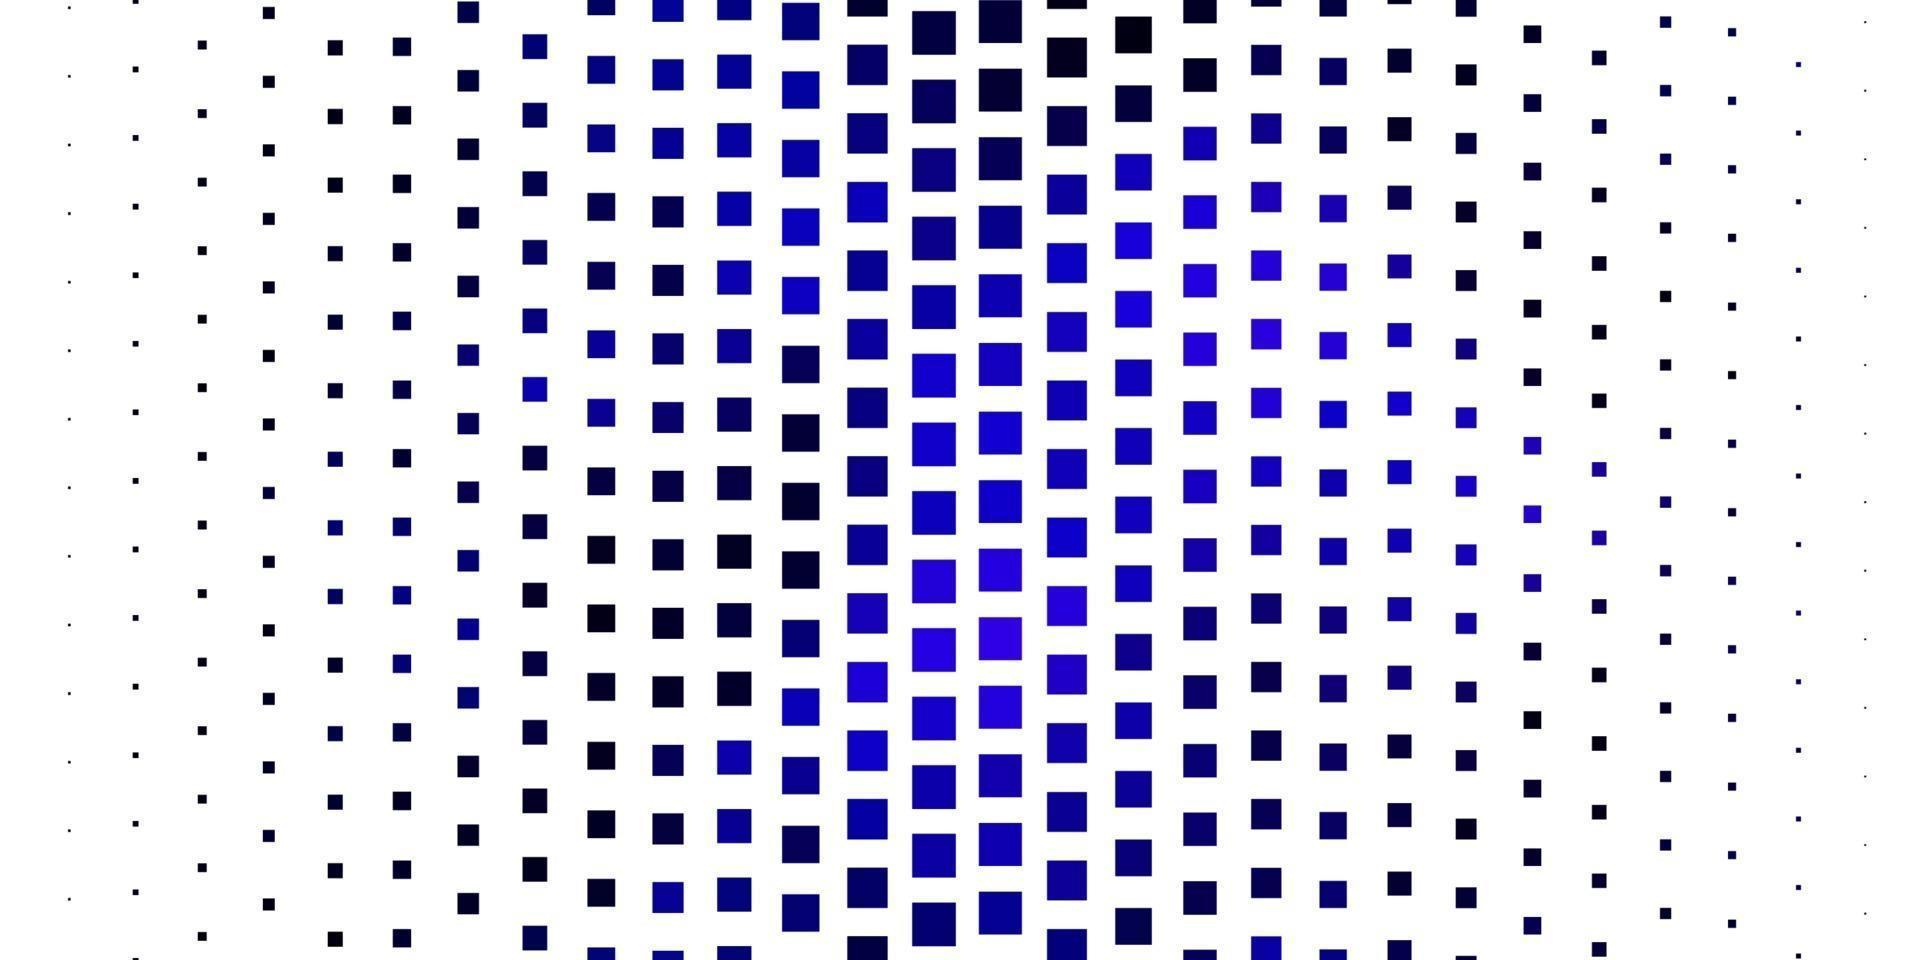 fond de vecteur rose foncé, bleu avec des rectangles.